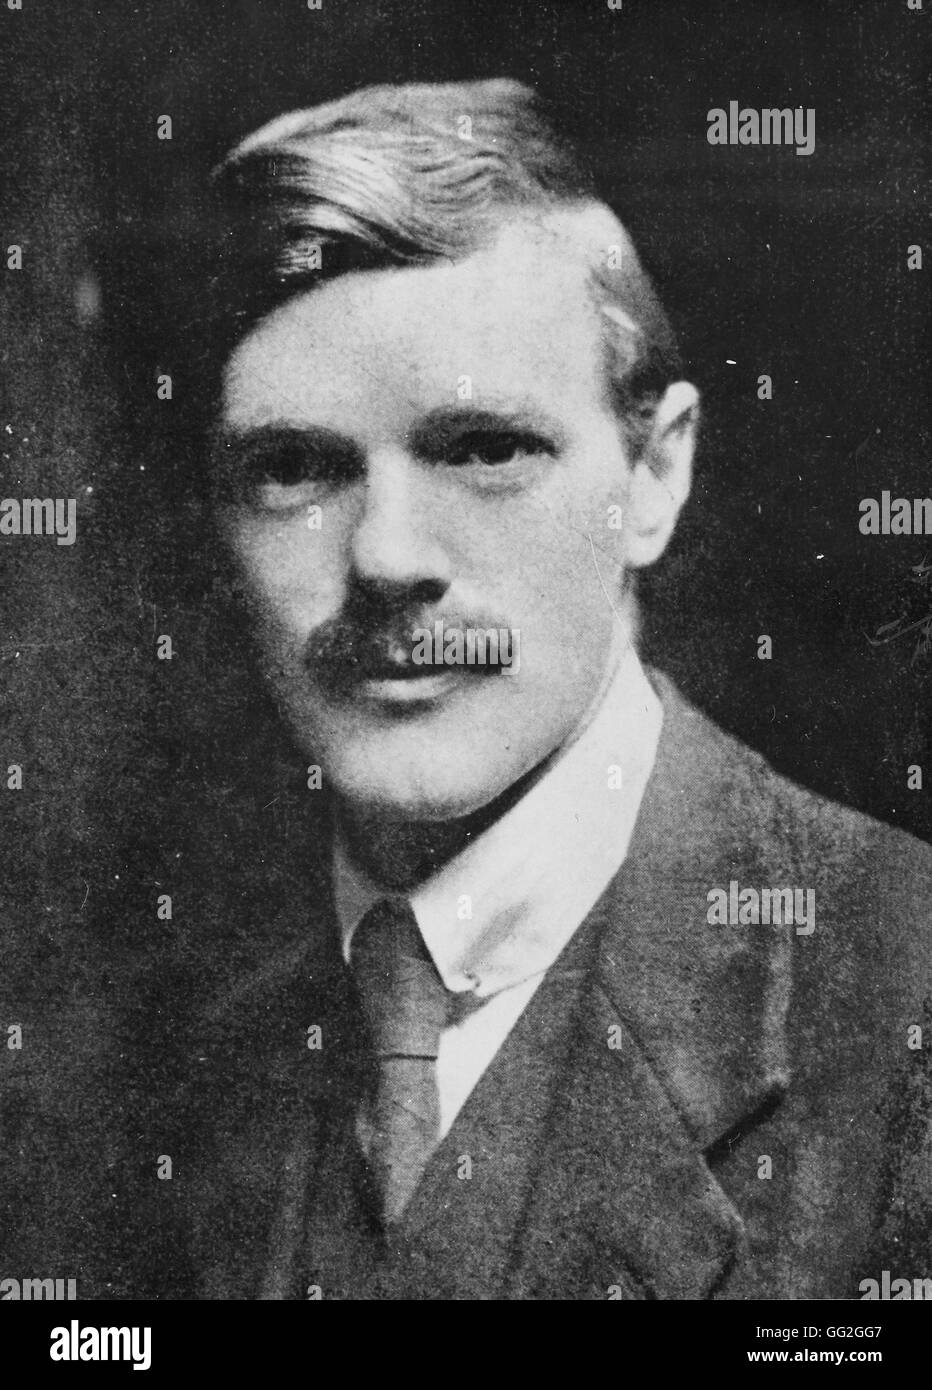 Porträt des David Herbert Lawrence, britischer Autor. Foto aufgenommen im Jahre 1914 Stockfoto